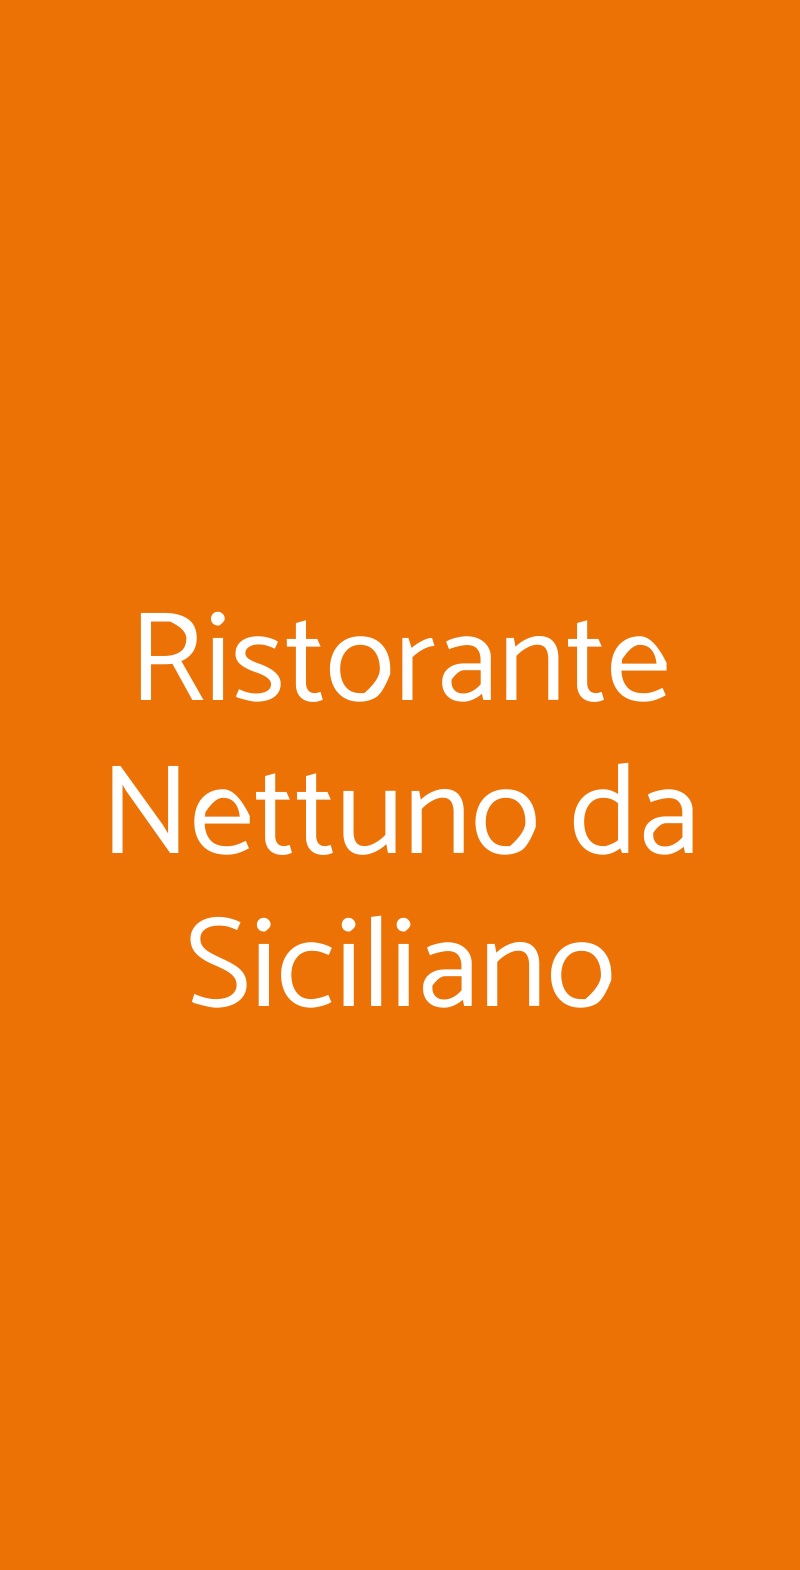 Ristorante Nettuno da Siciliano Taormina menù 1 pagina